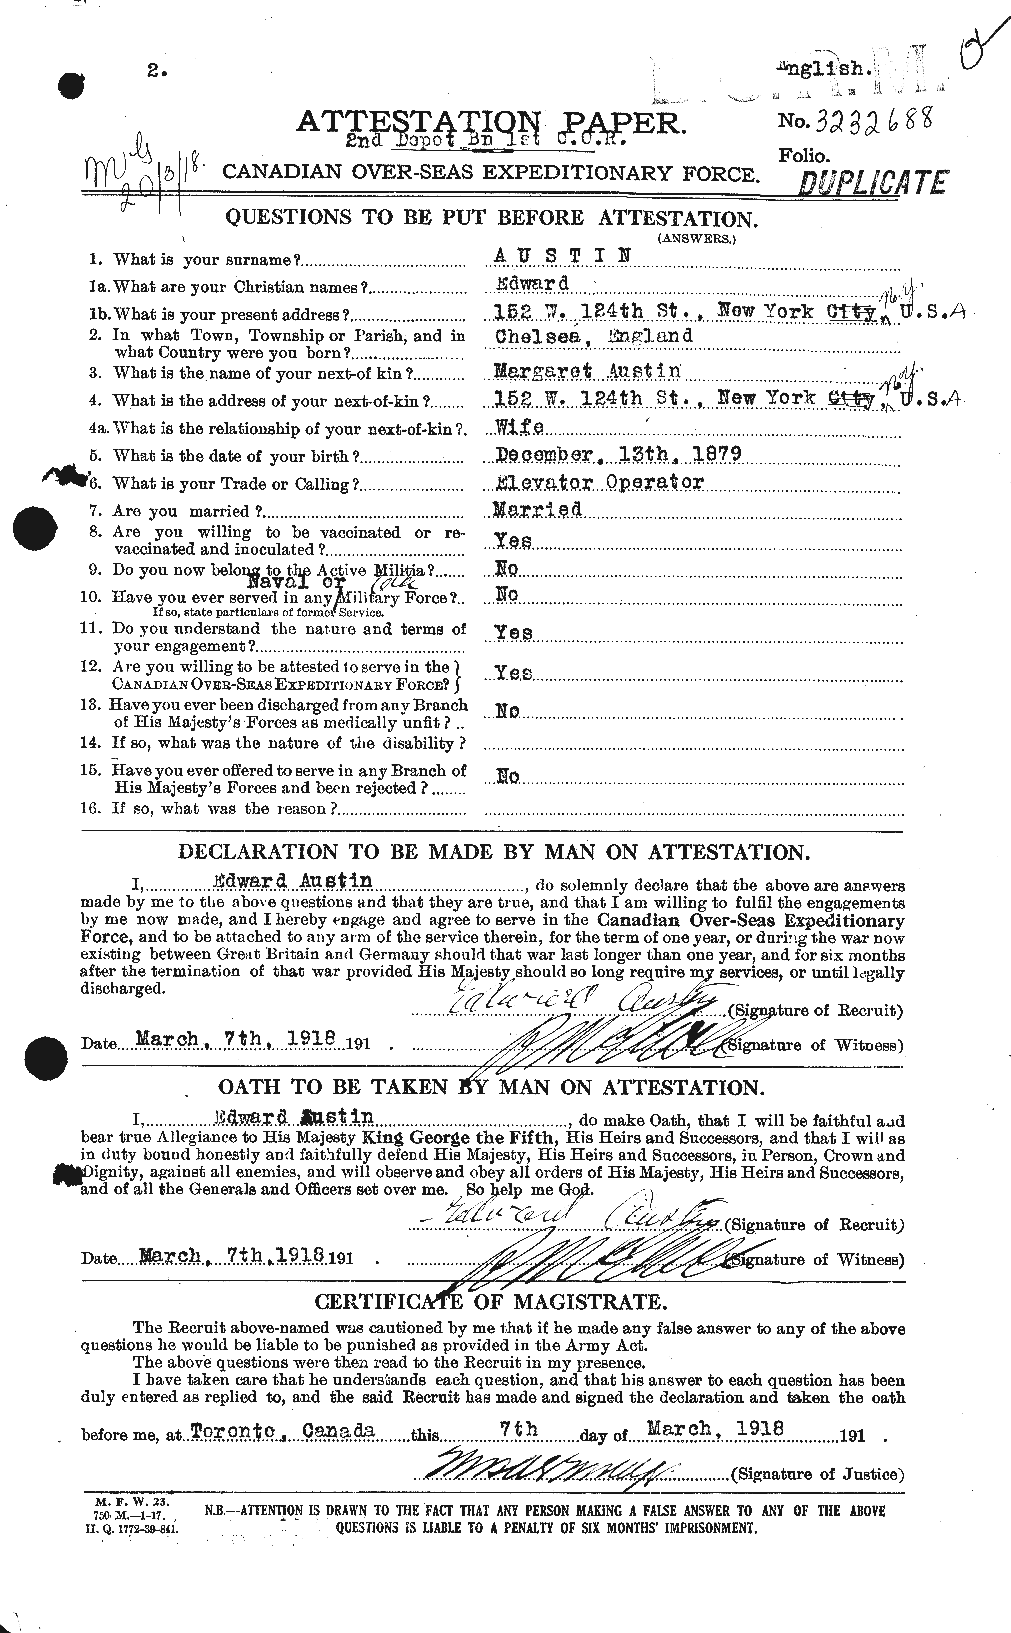 Dossiers du Personnel de la Première Guerre mondiale - CEC 215430a